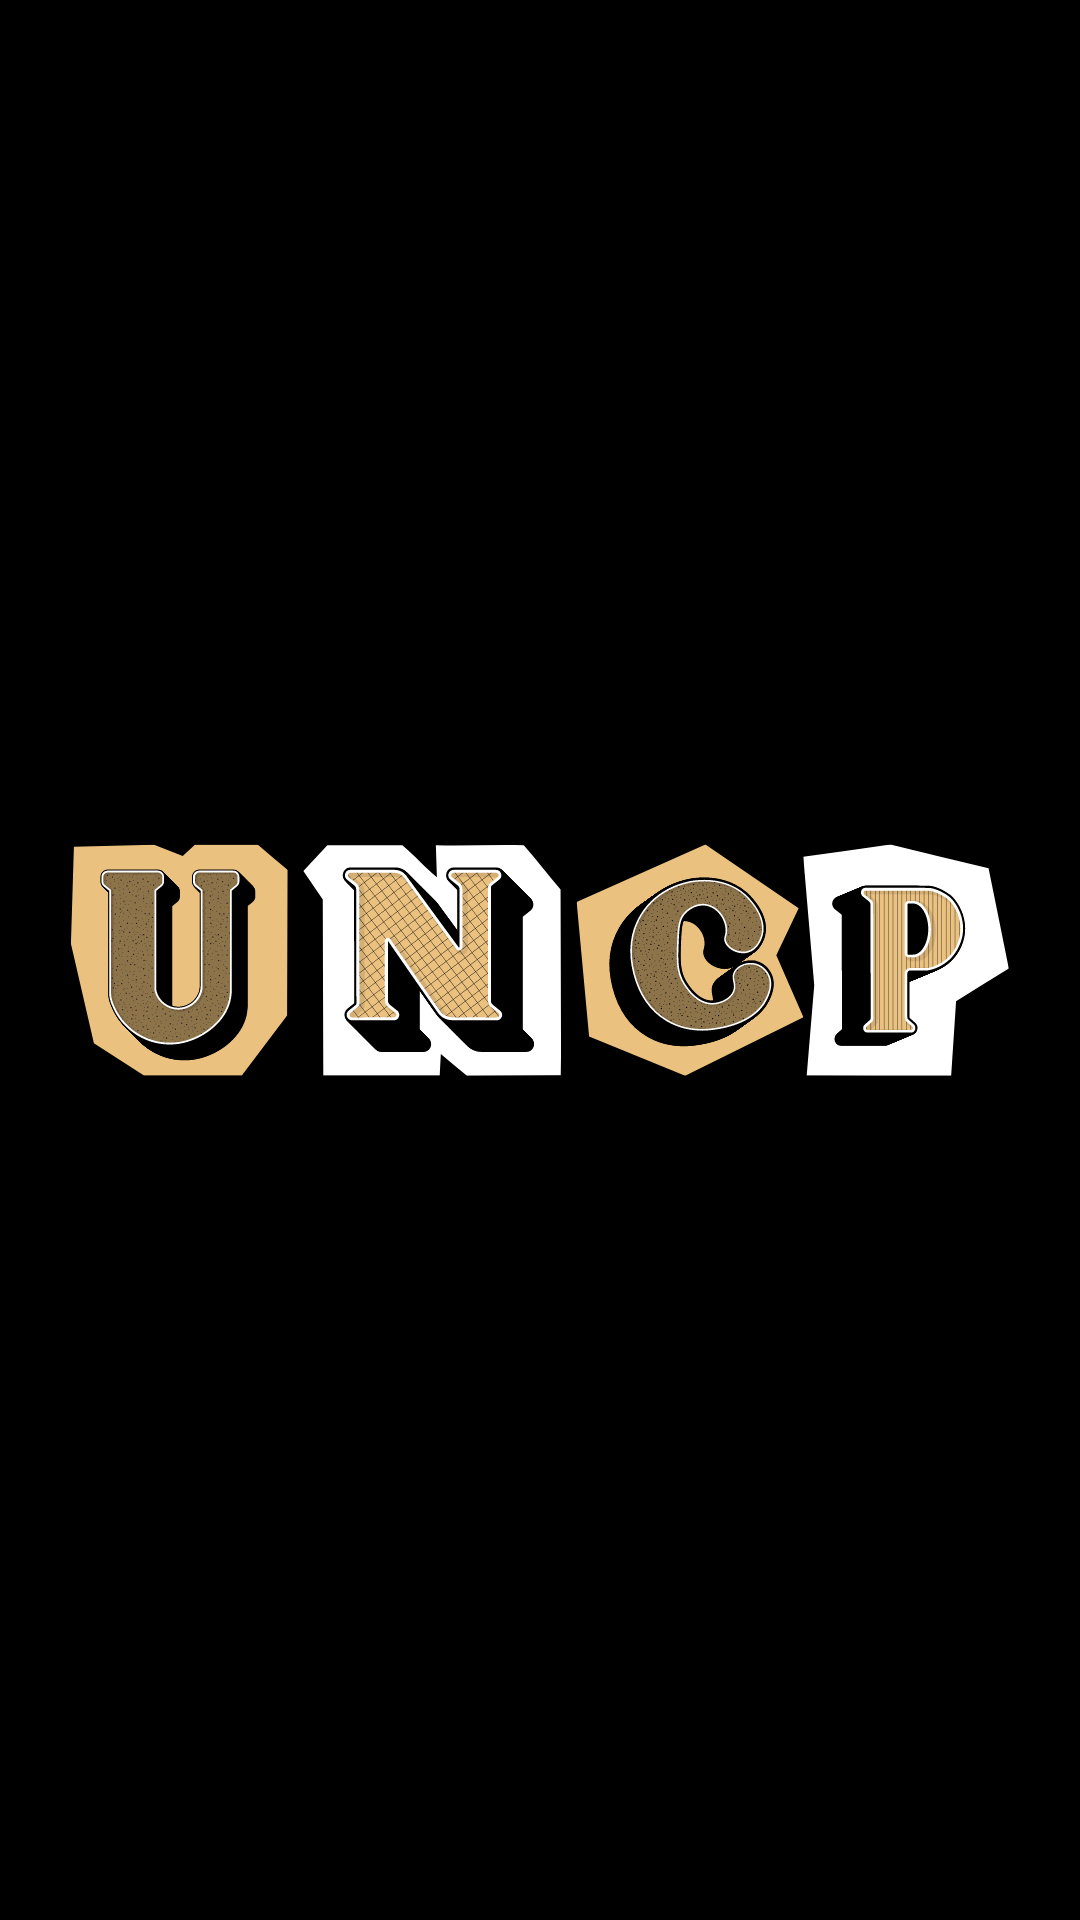 UNCP 